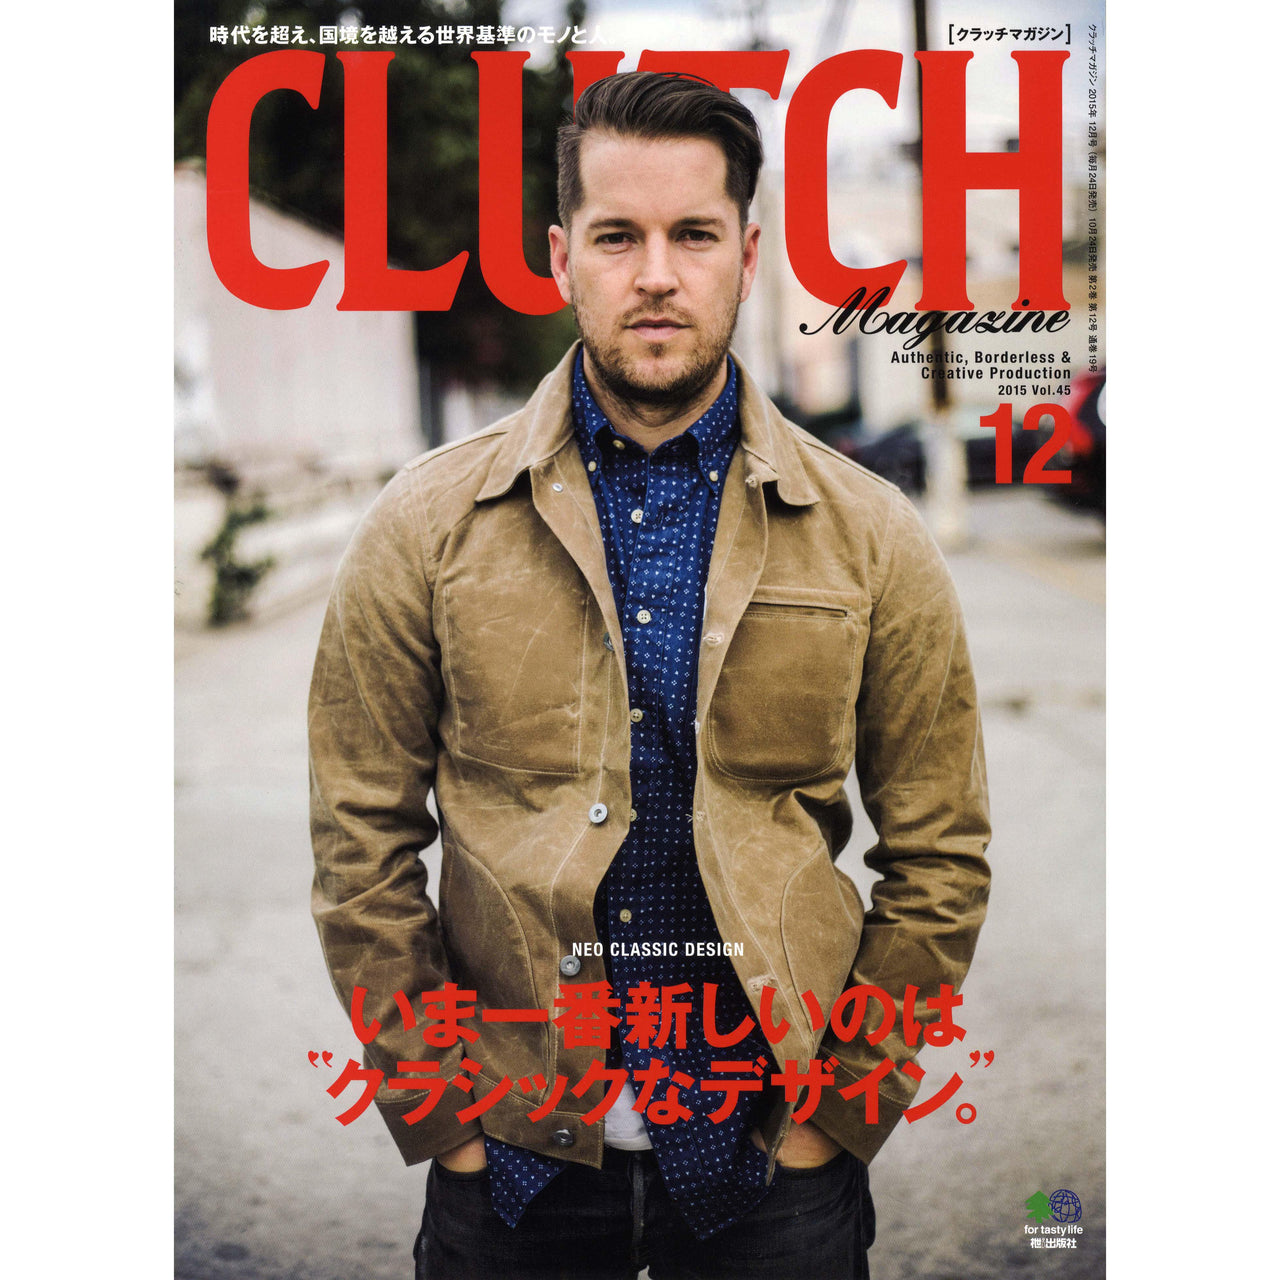 Clutch Magazine Vol.45-Clutch Cafe